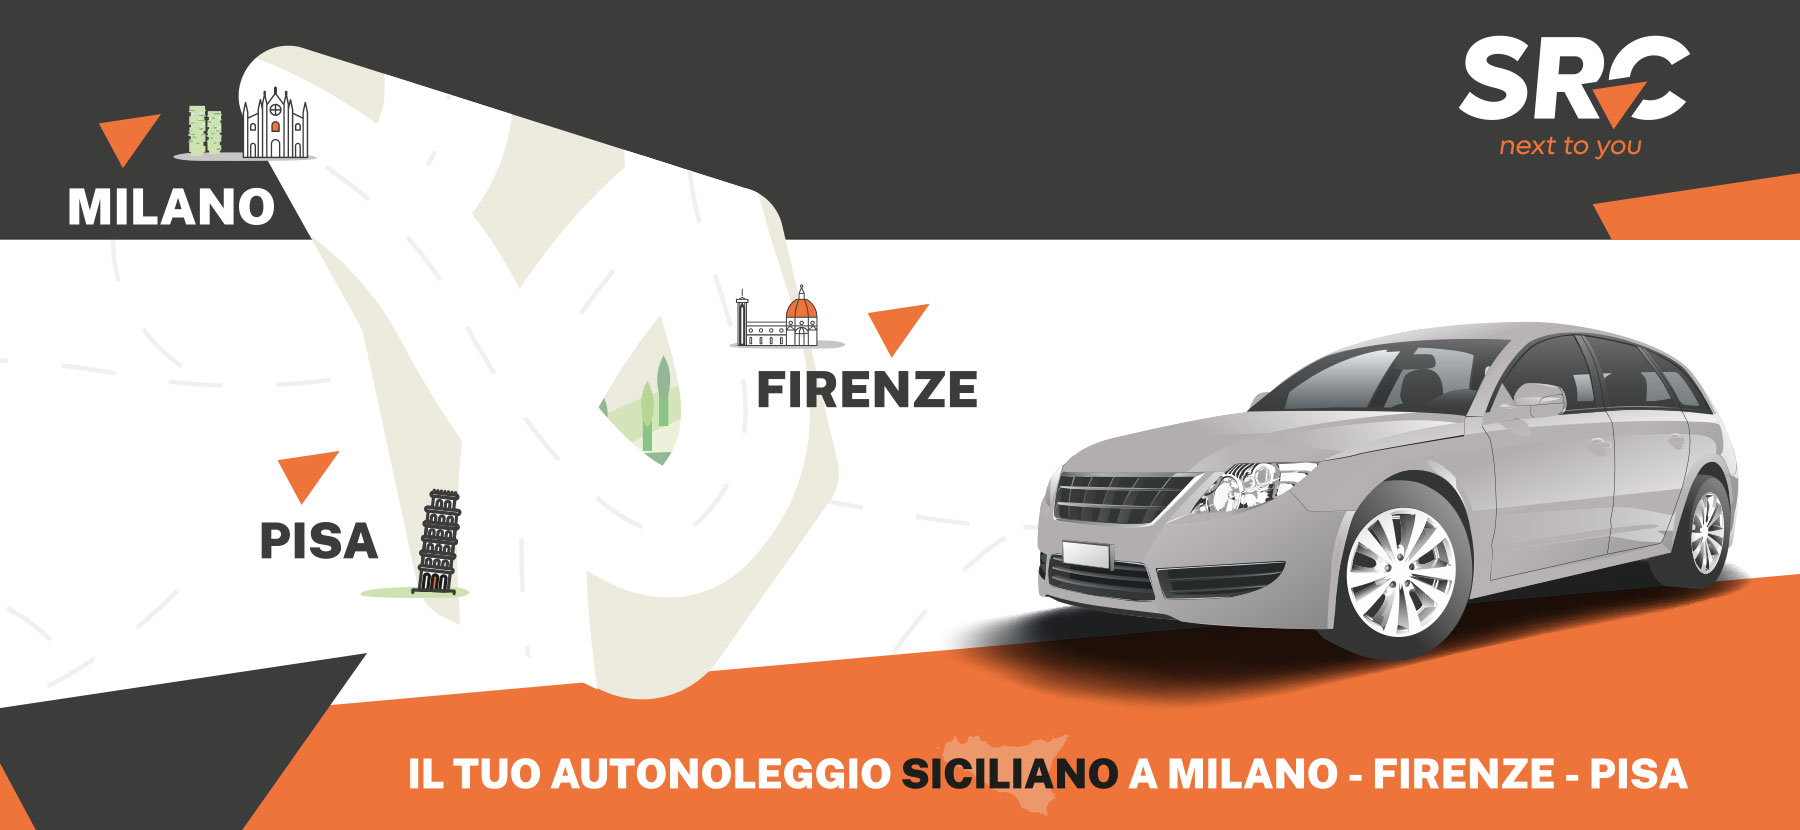 Il tuo autonoleggio siciliano a Milano, Firenze e Pisa